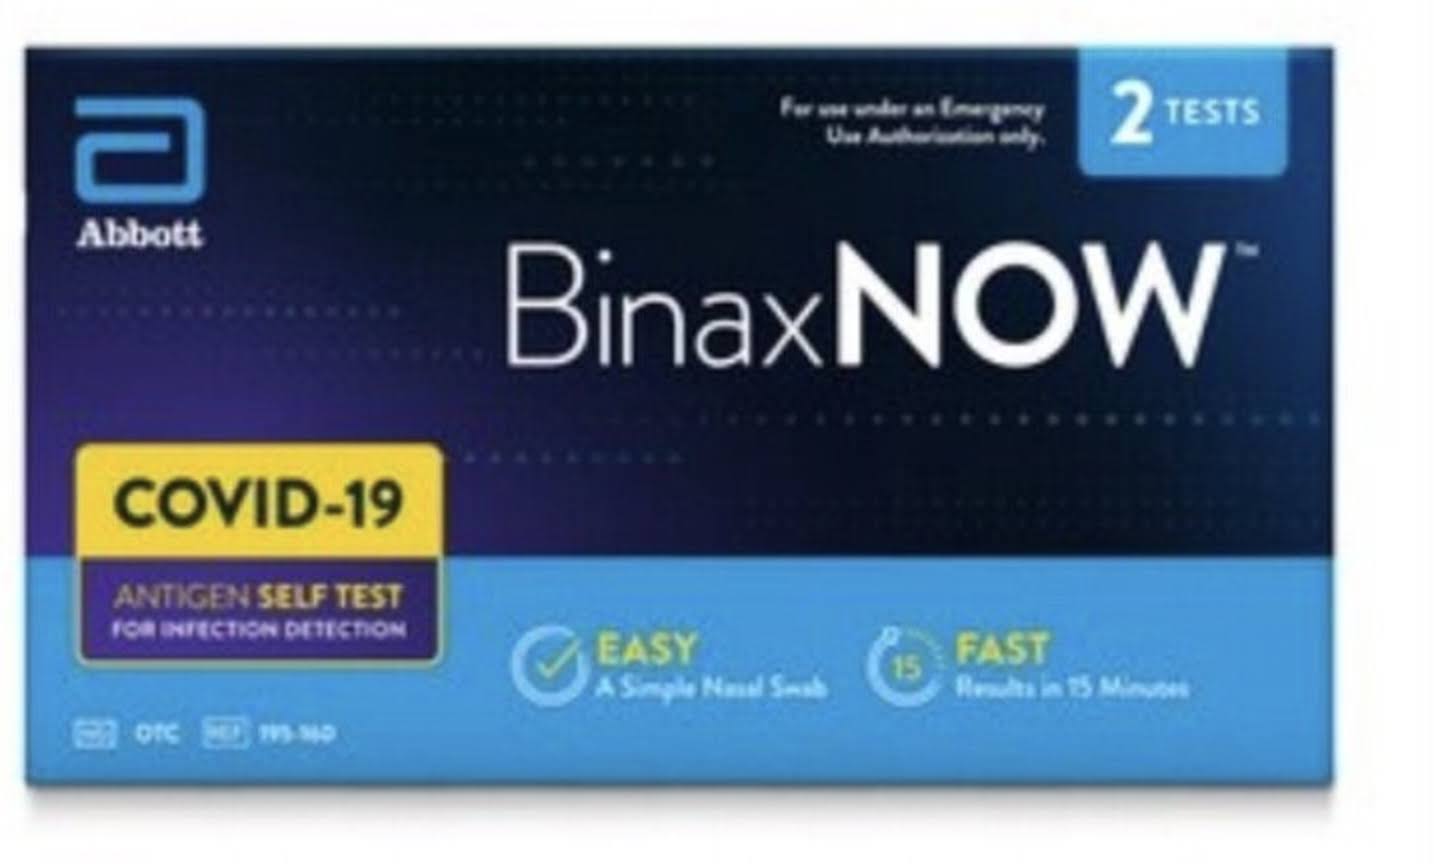 BinaxNOW Covid-19 Antigen Self-Test Kit